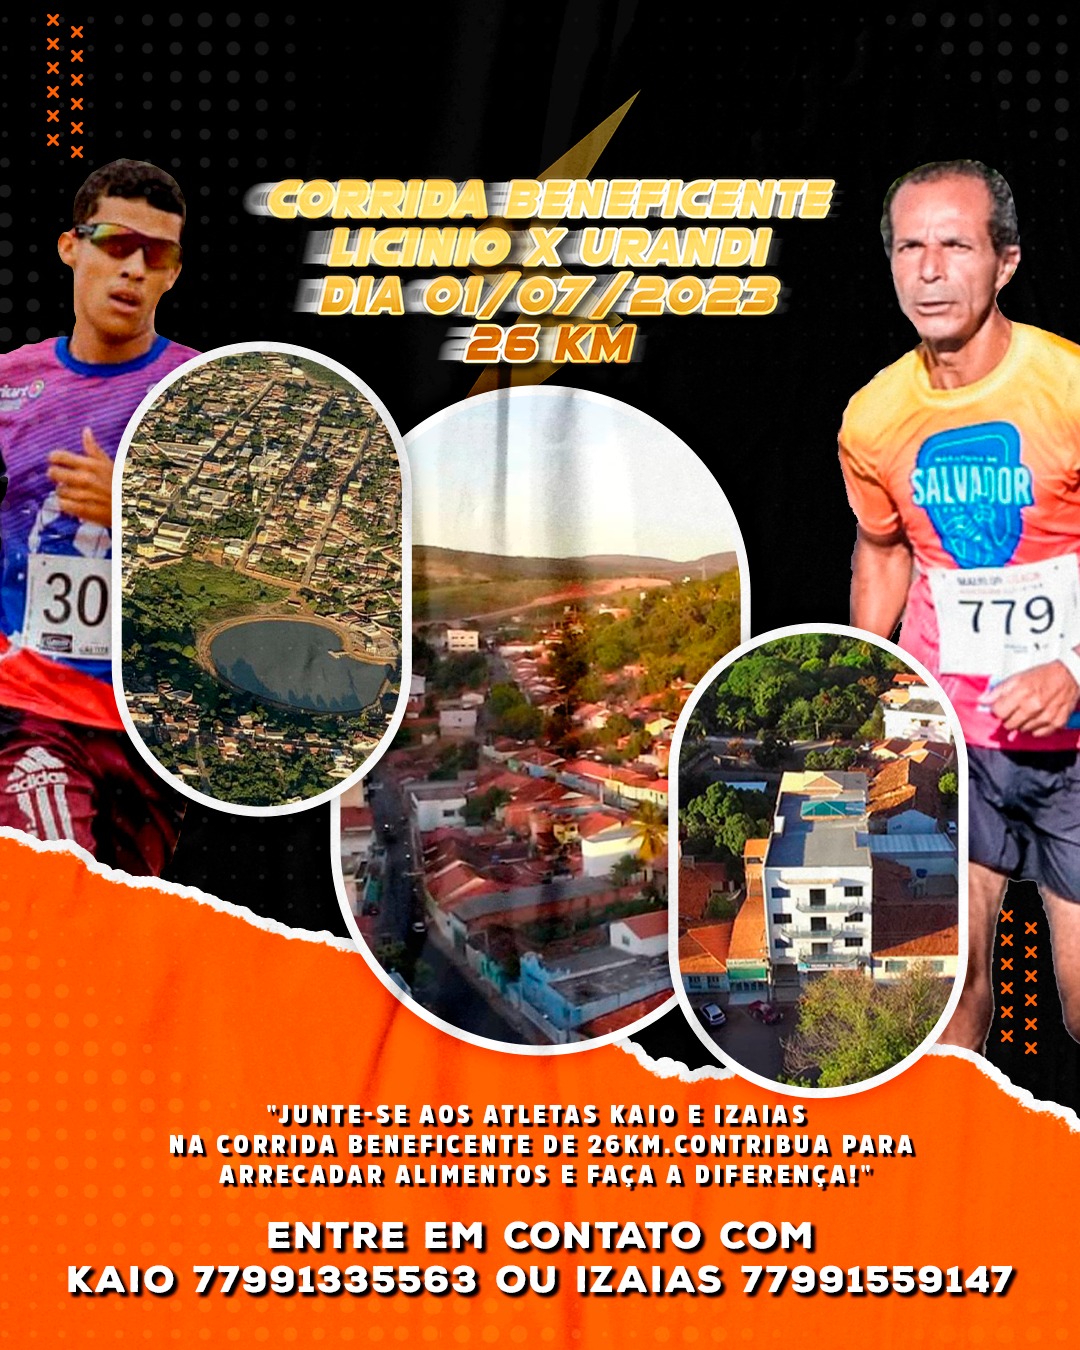 Com premiação de atletas, TEM Running encerra a 4ª edição em Bauru, TEM  running bauru